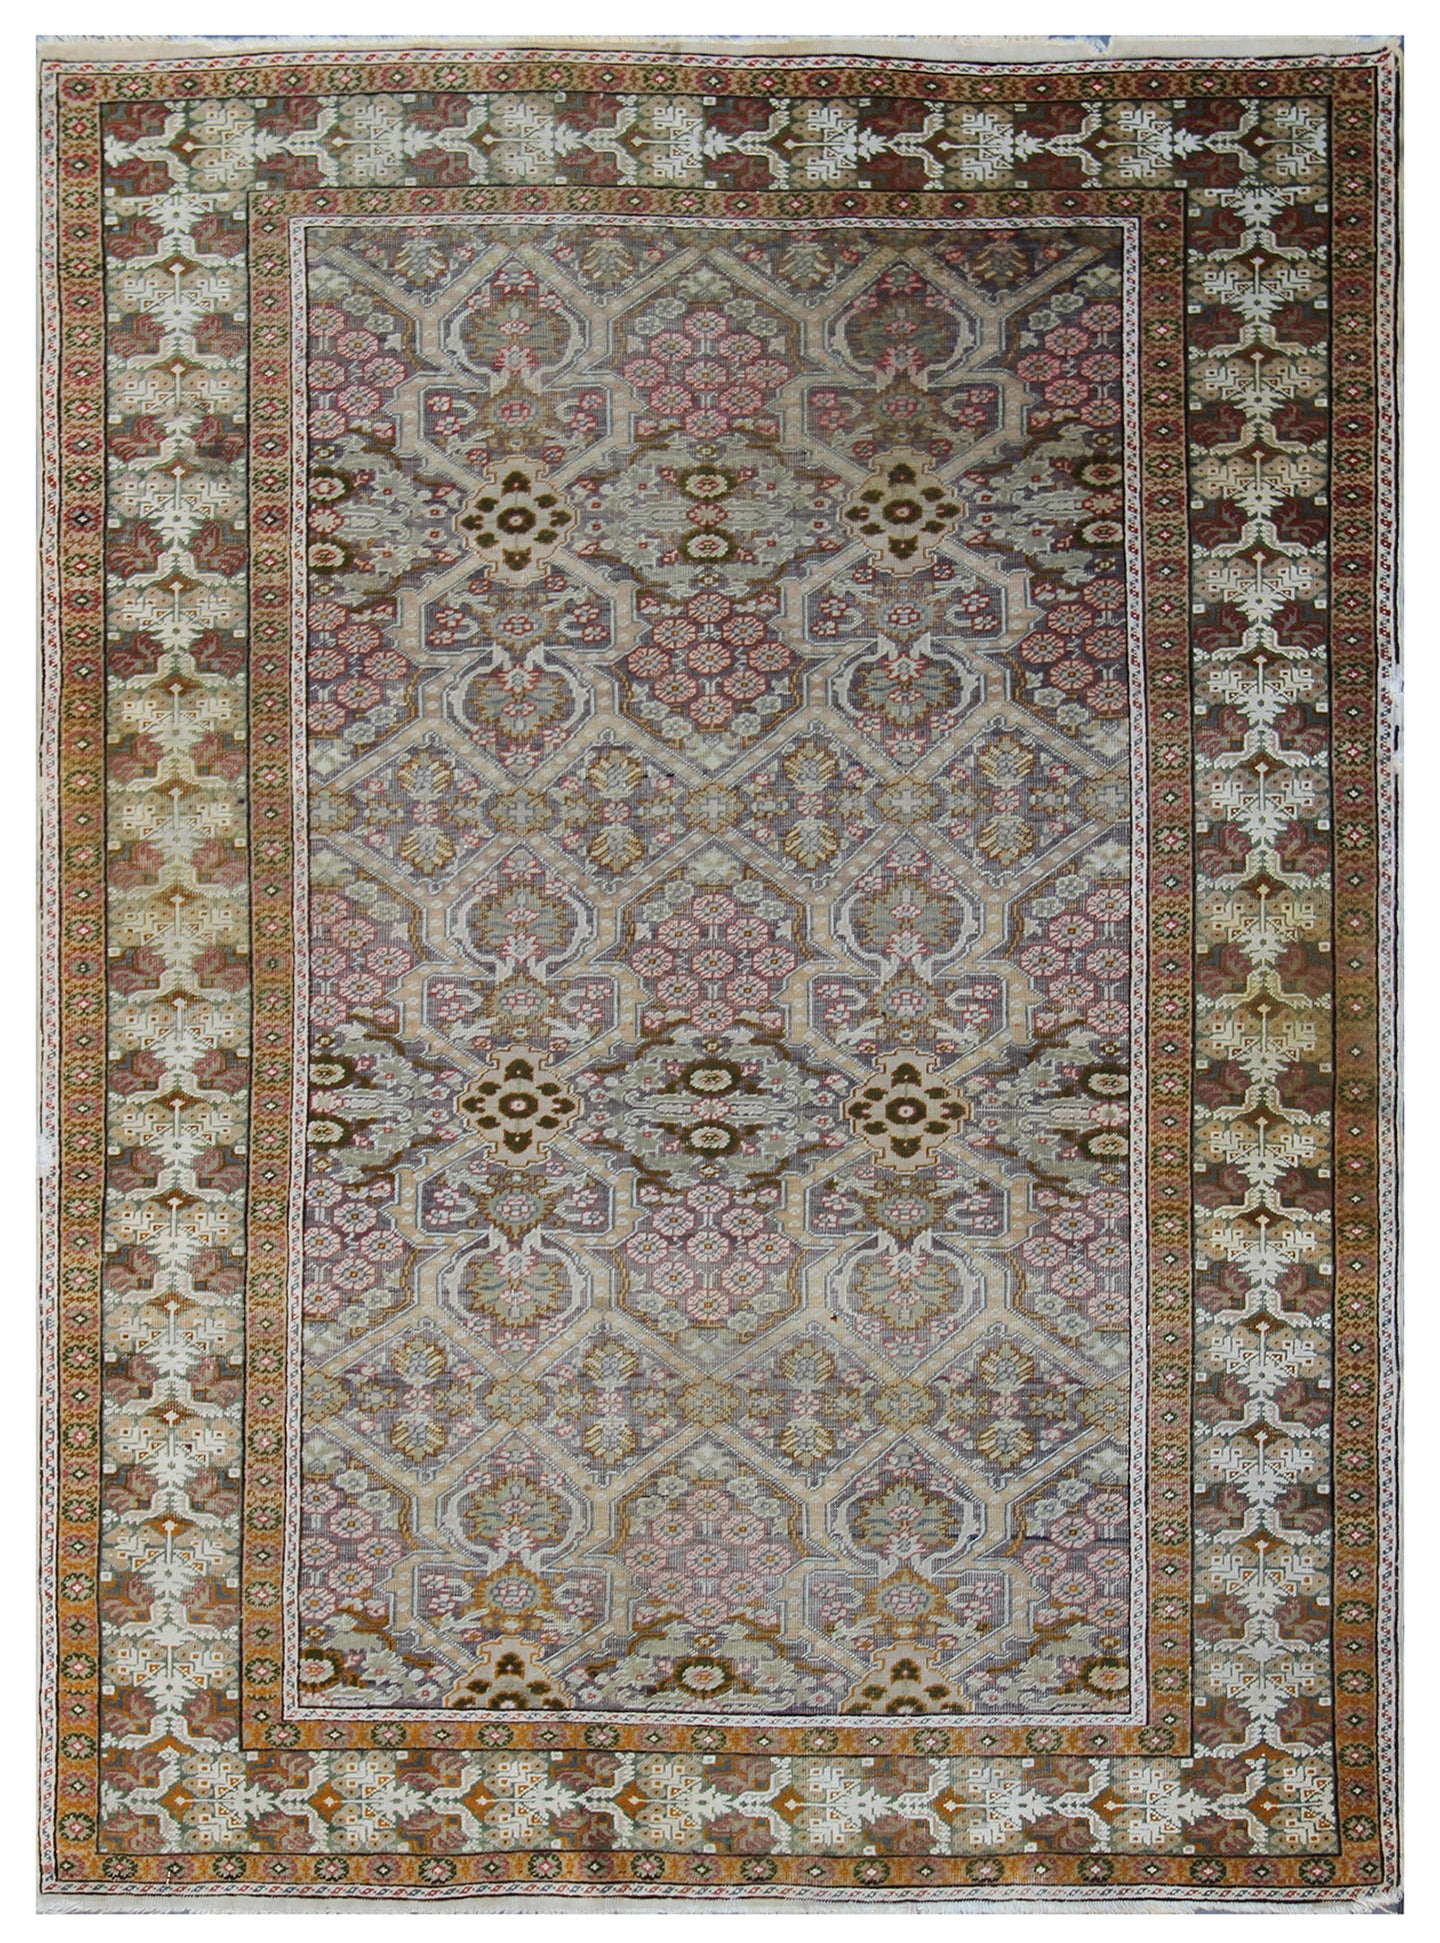 4'x6' Antique Persian Rug